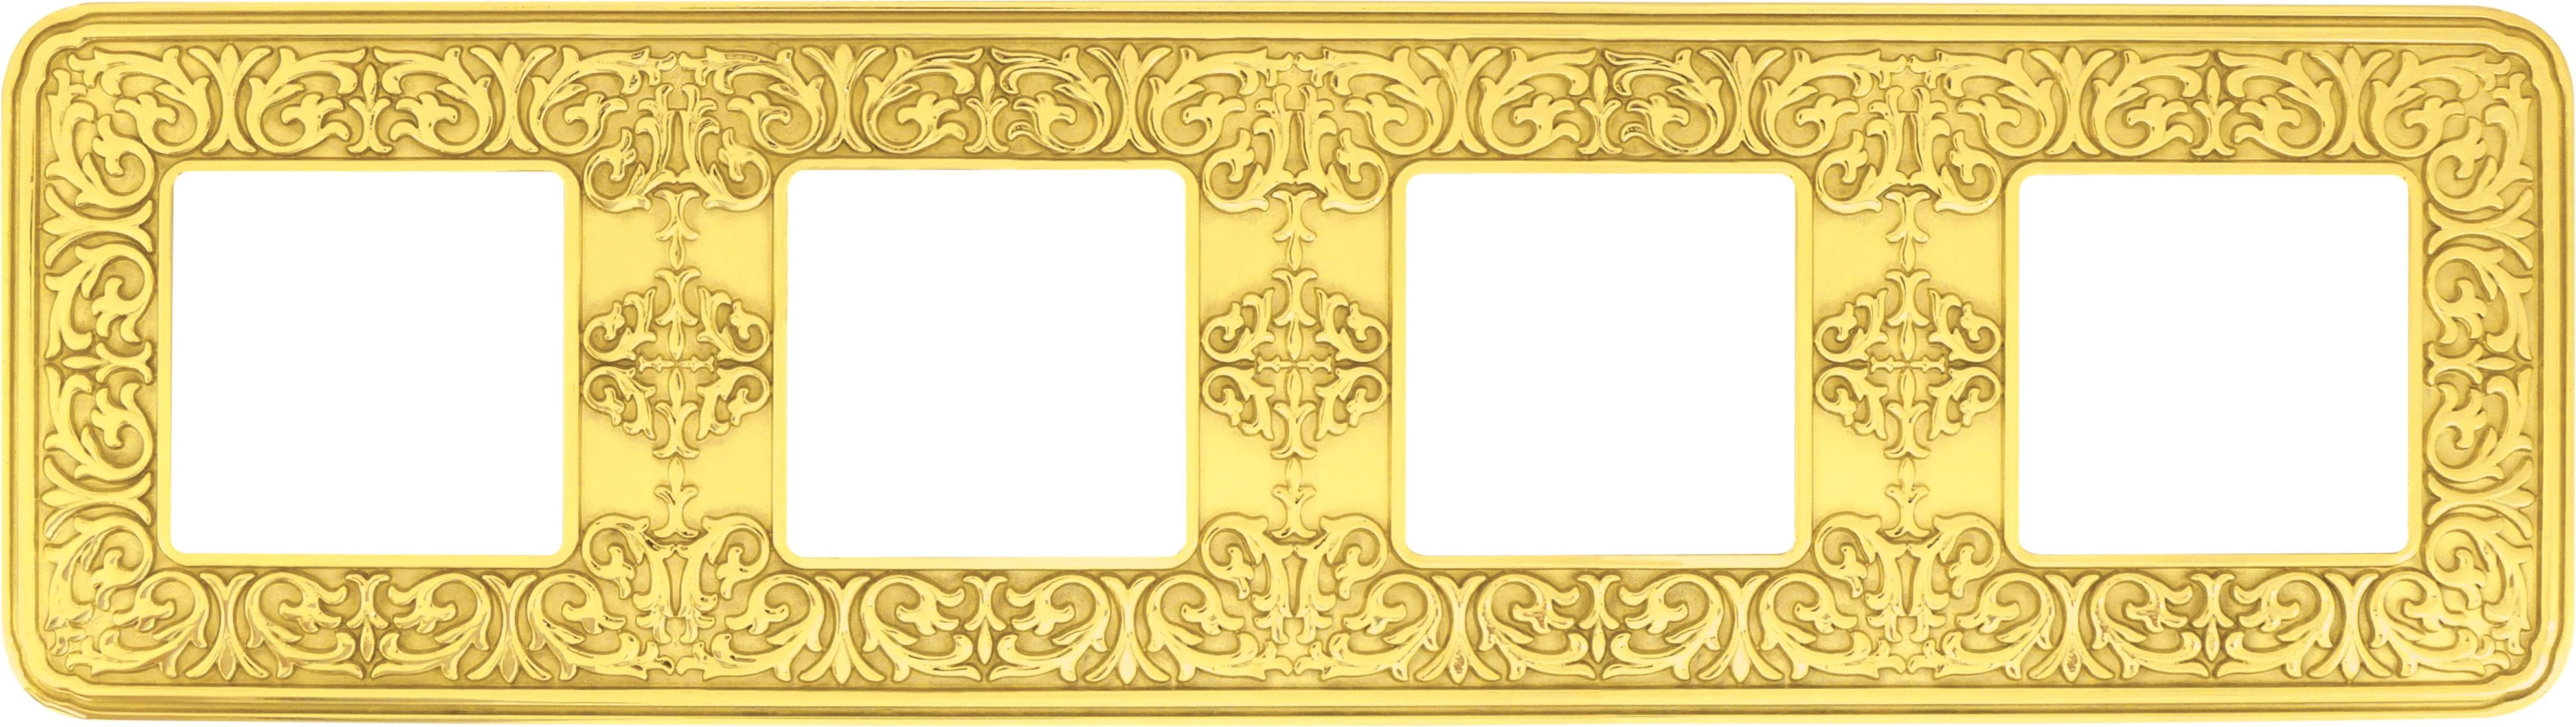 артикул FD01374OB название Рамка 4-ая (четверная), Fede, Серия Emporio, Светлое золото